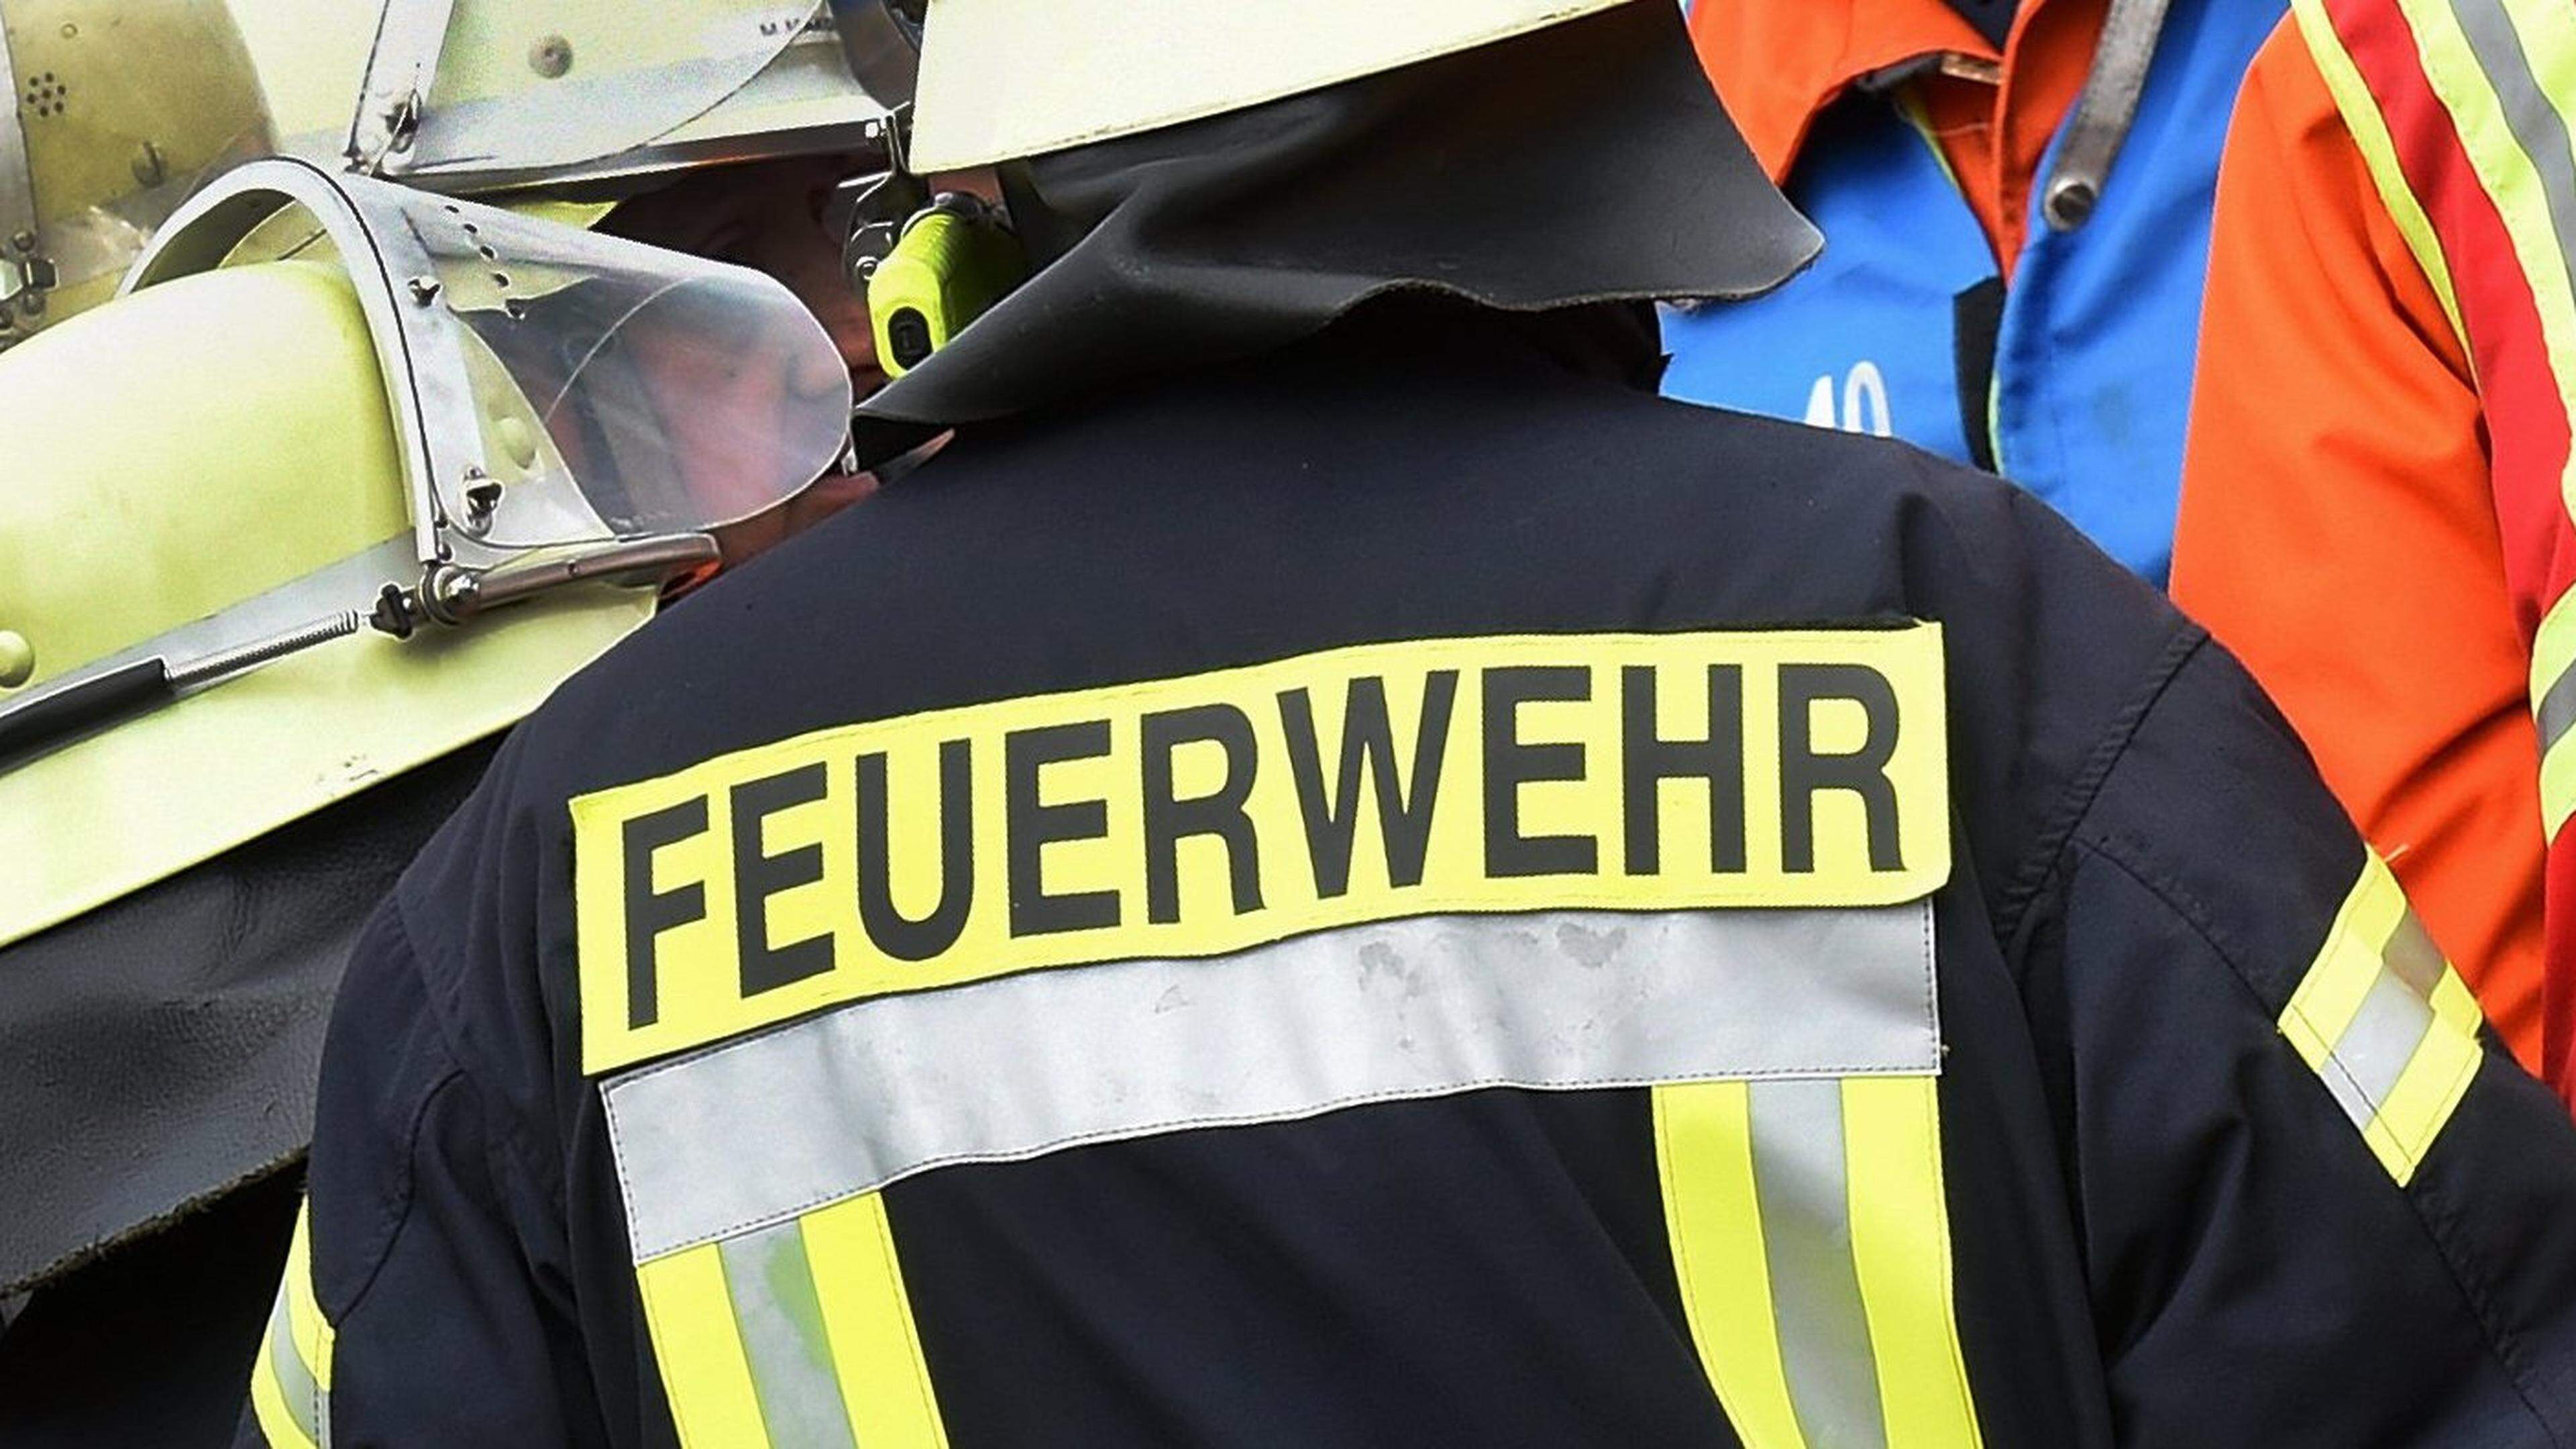 In der Nacht von Samstag auf Sonntag ist es in Eschweiler zu einem Brand in einem Asylantenwohnheim gekommen. Schwer verletzt wurde niemand. (Symbolbild)